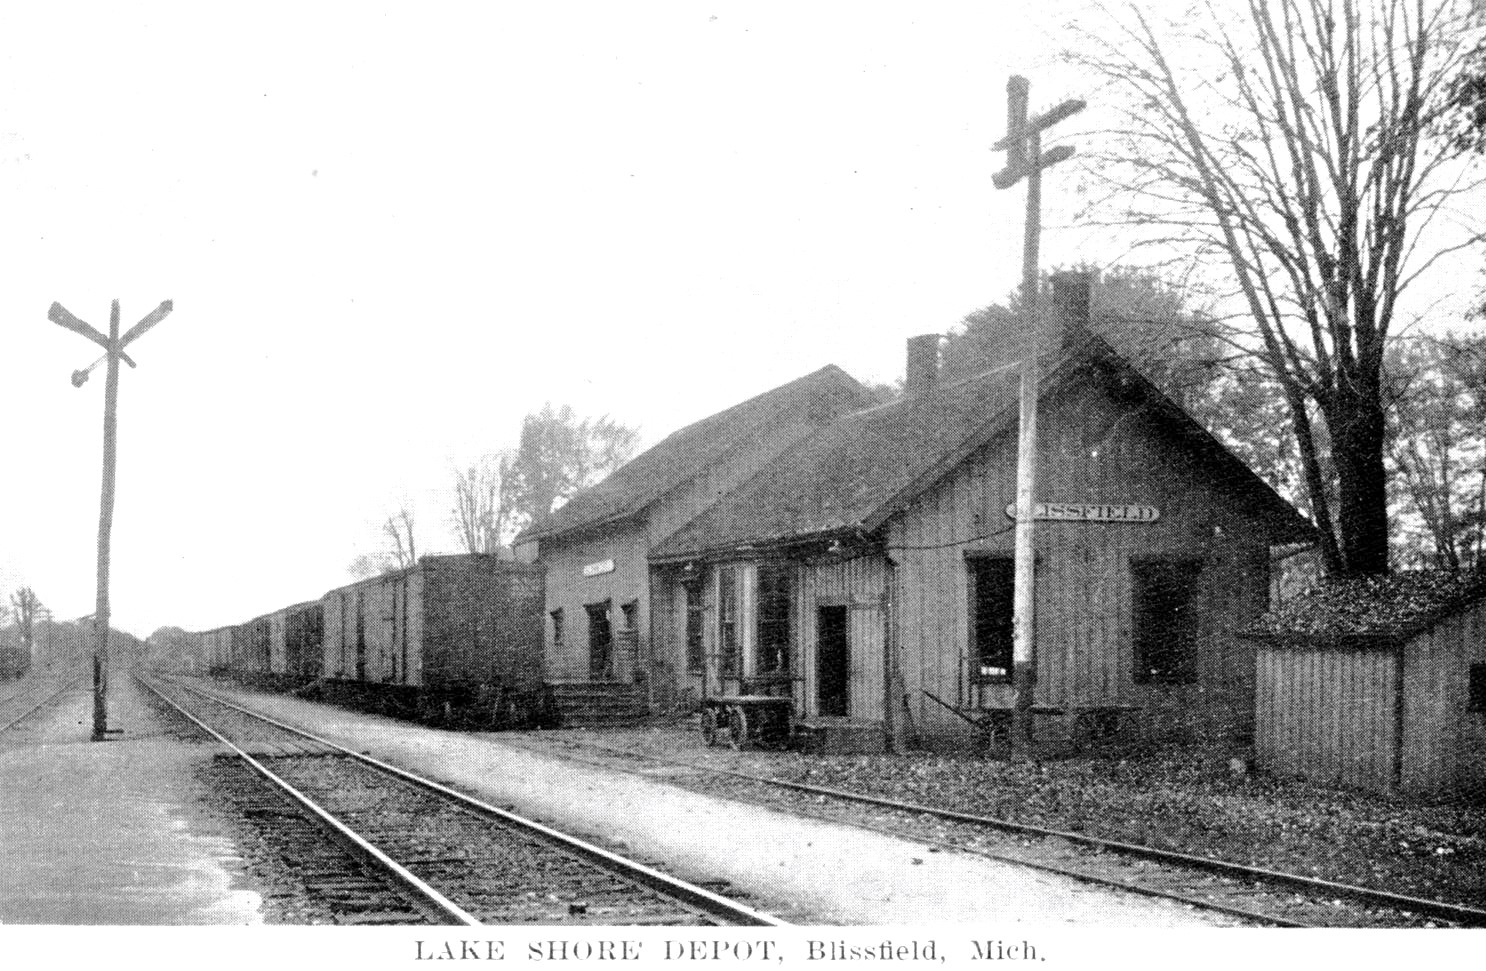 LS&MS Blissfield Depot in 1910